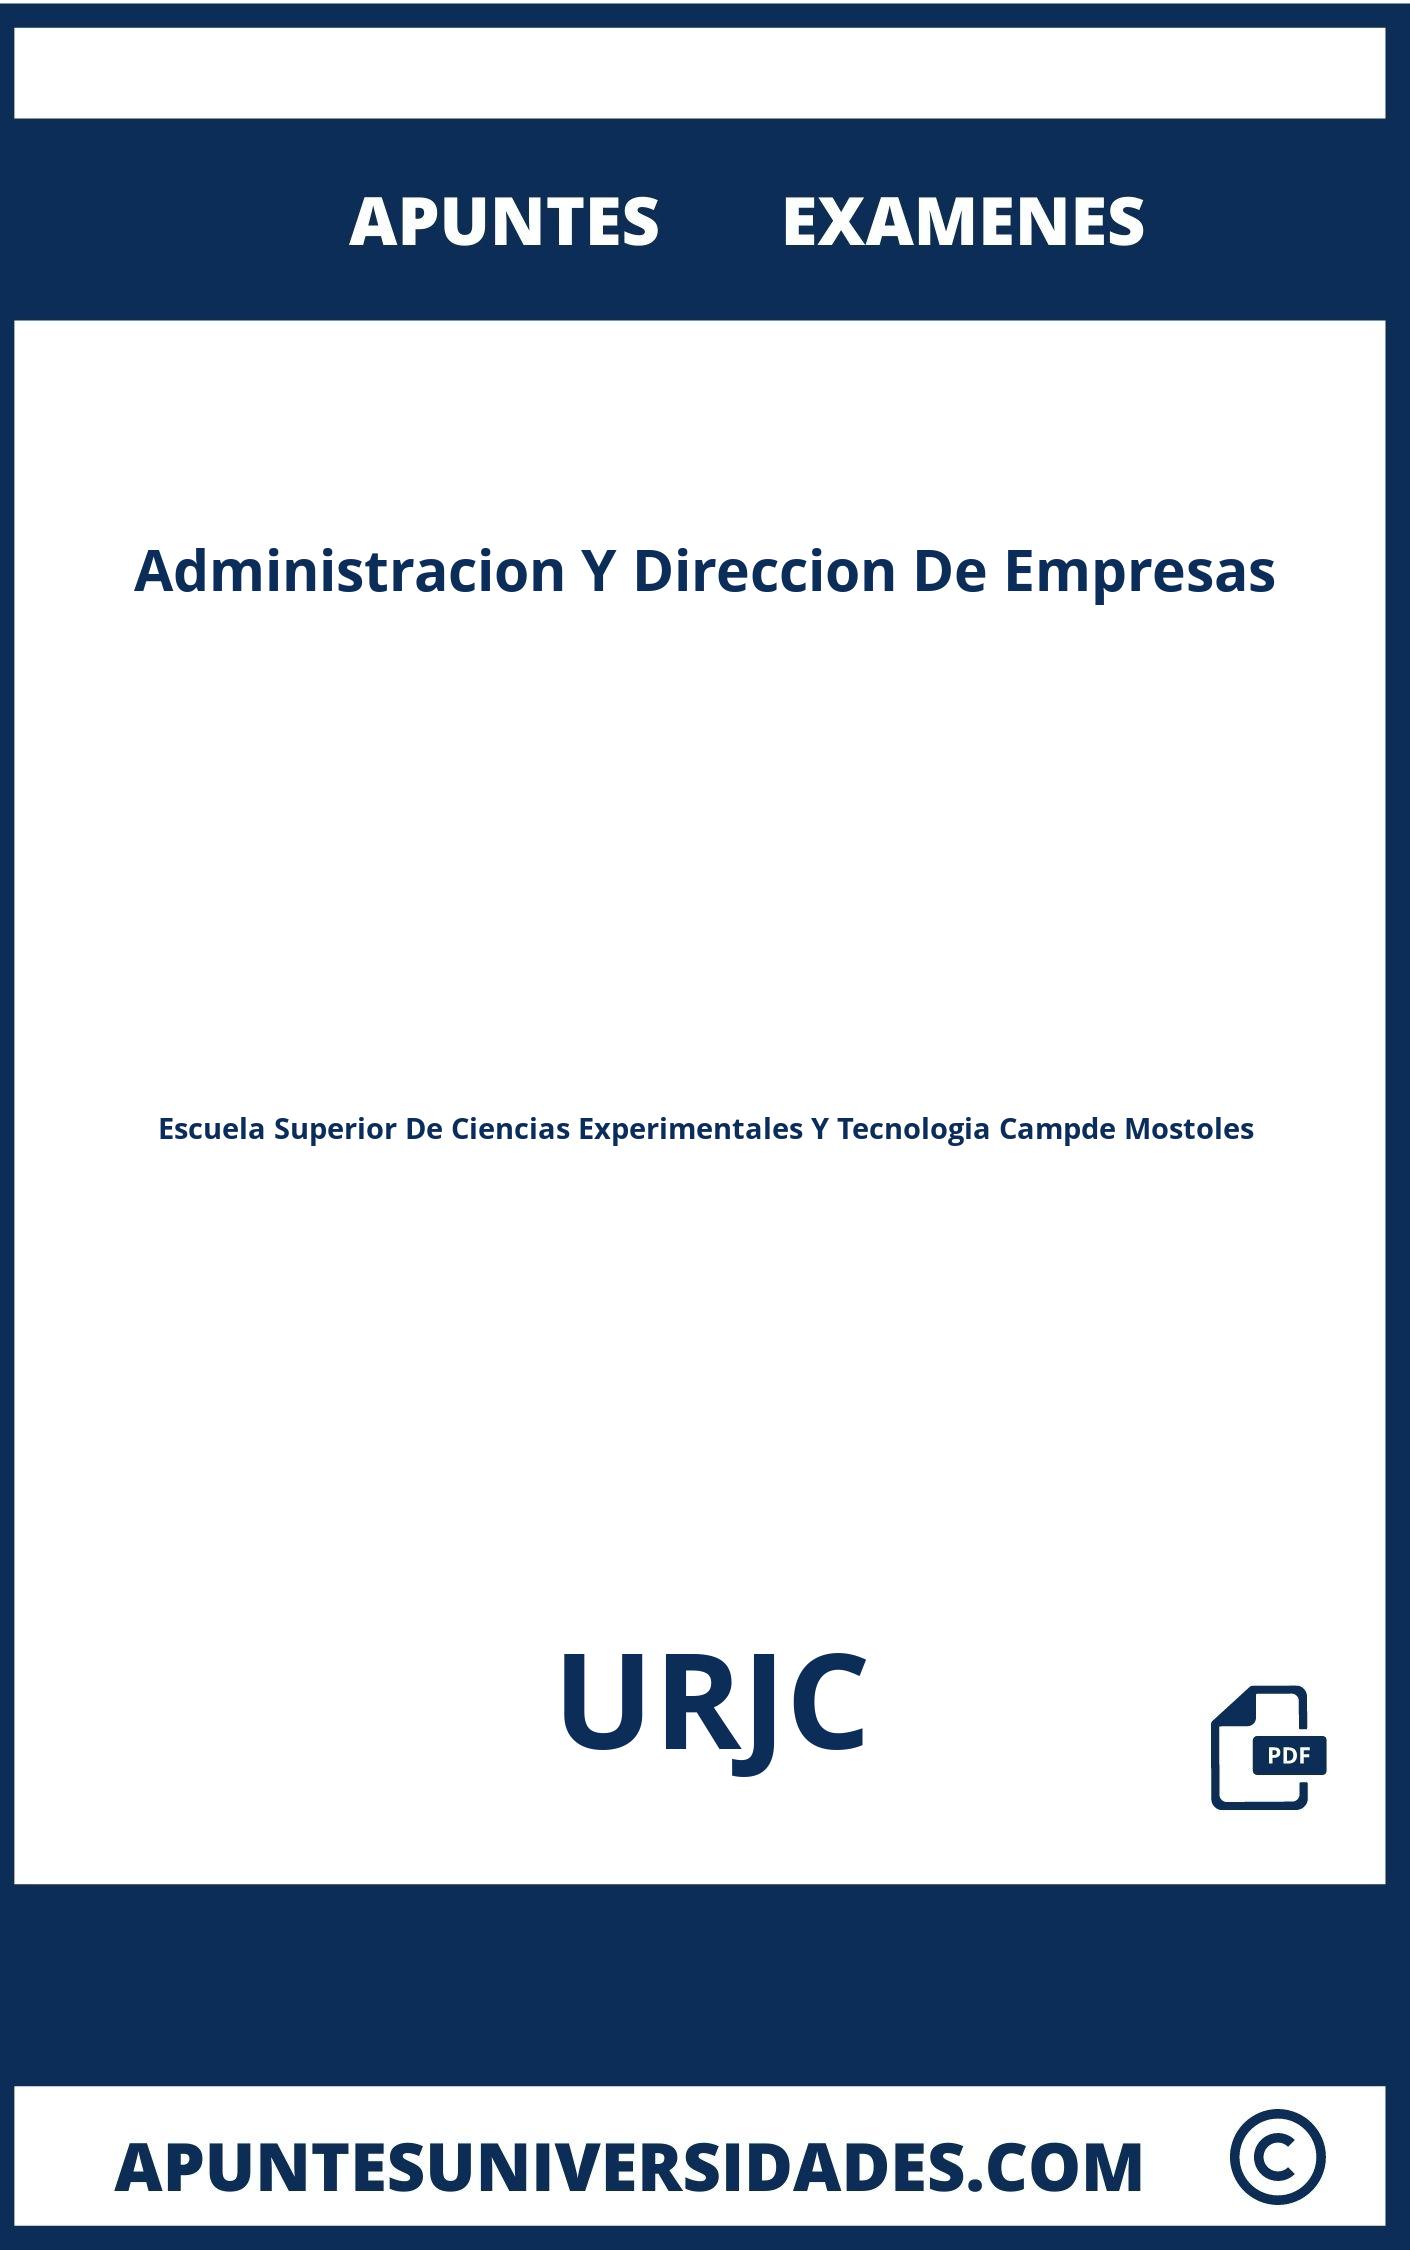 Apuntes y Examenes Administracion Y Direccion De Empresas URJC